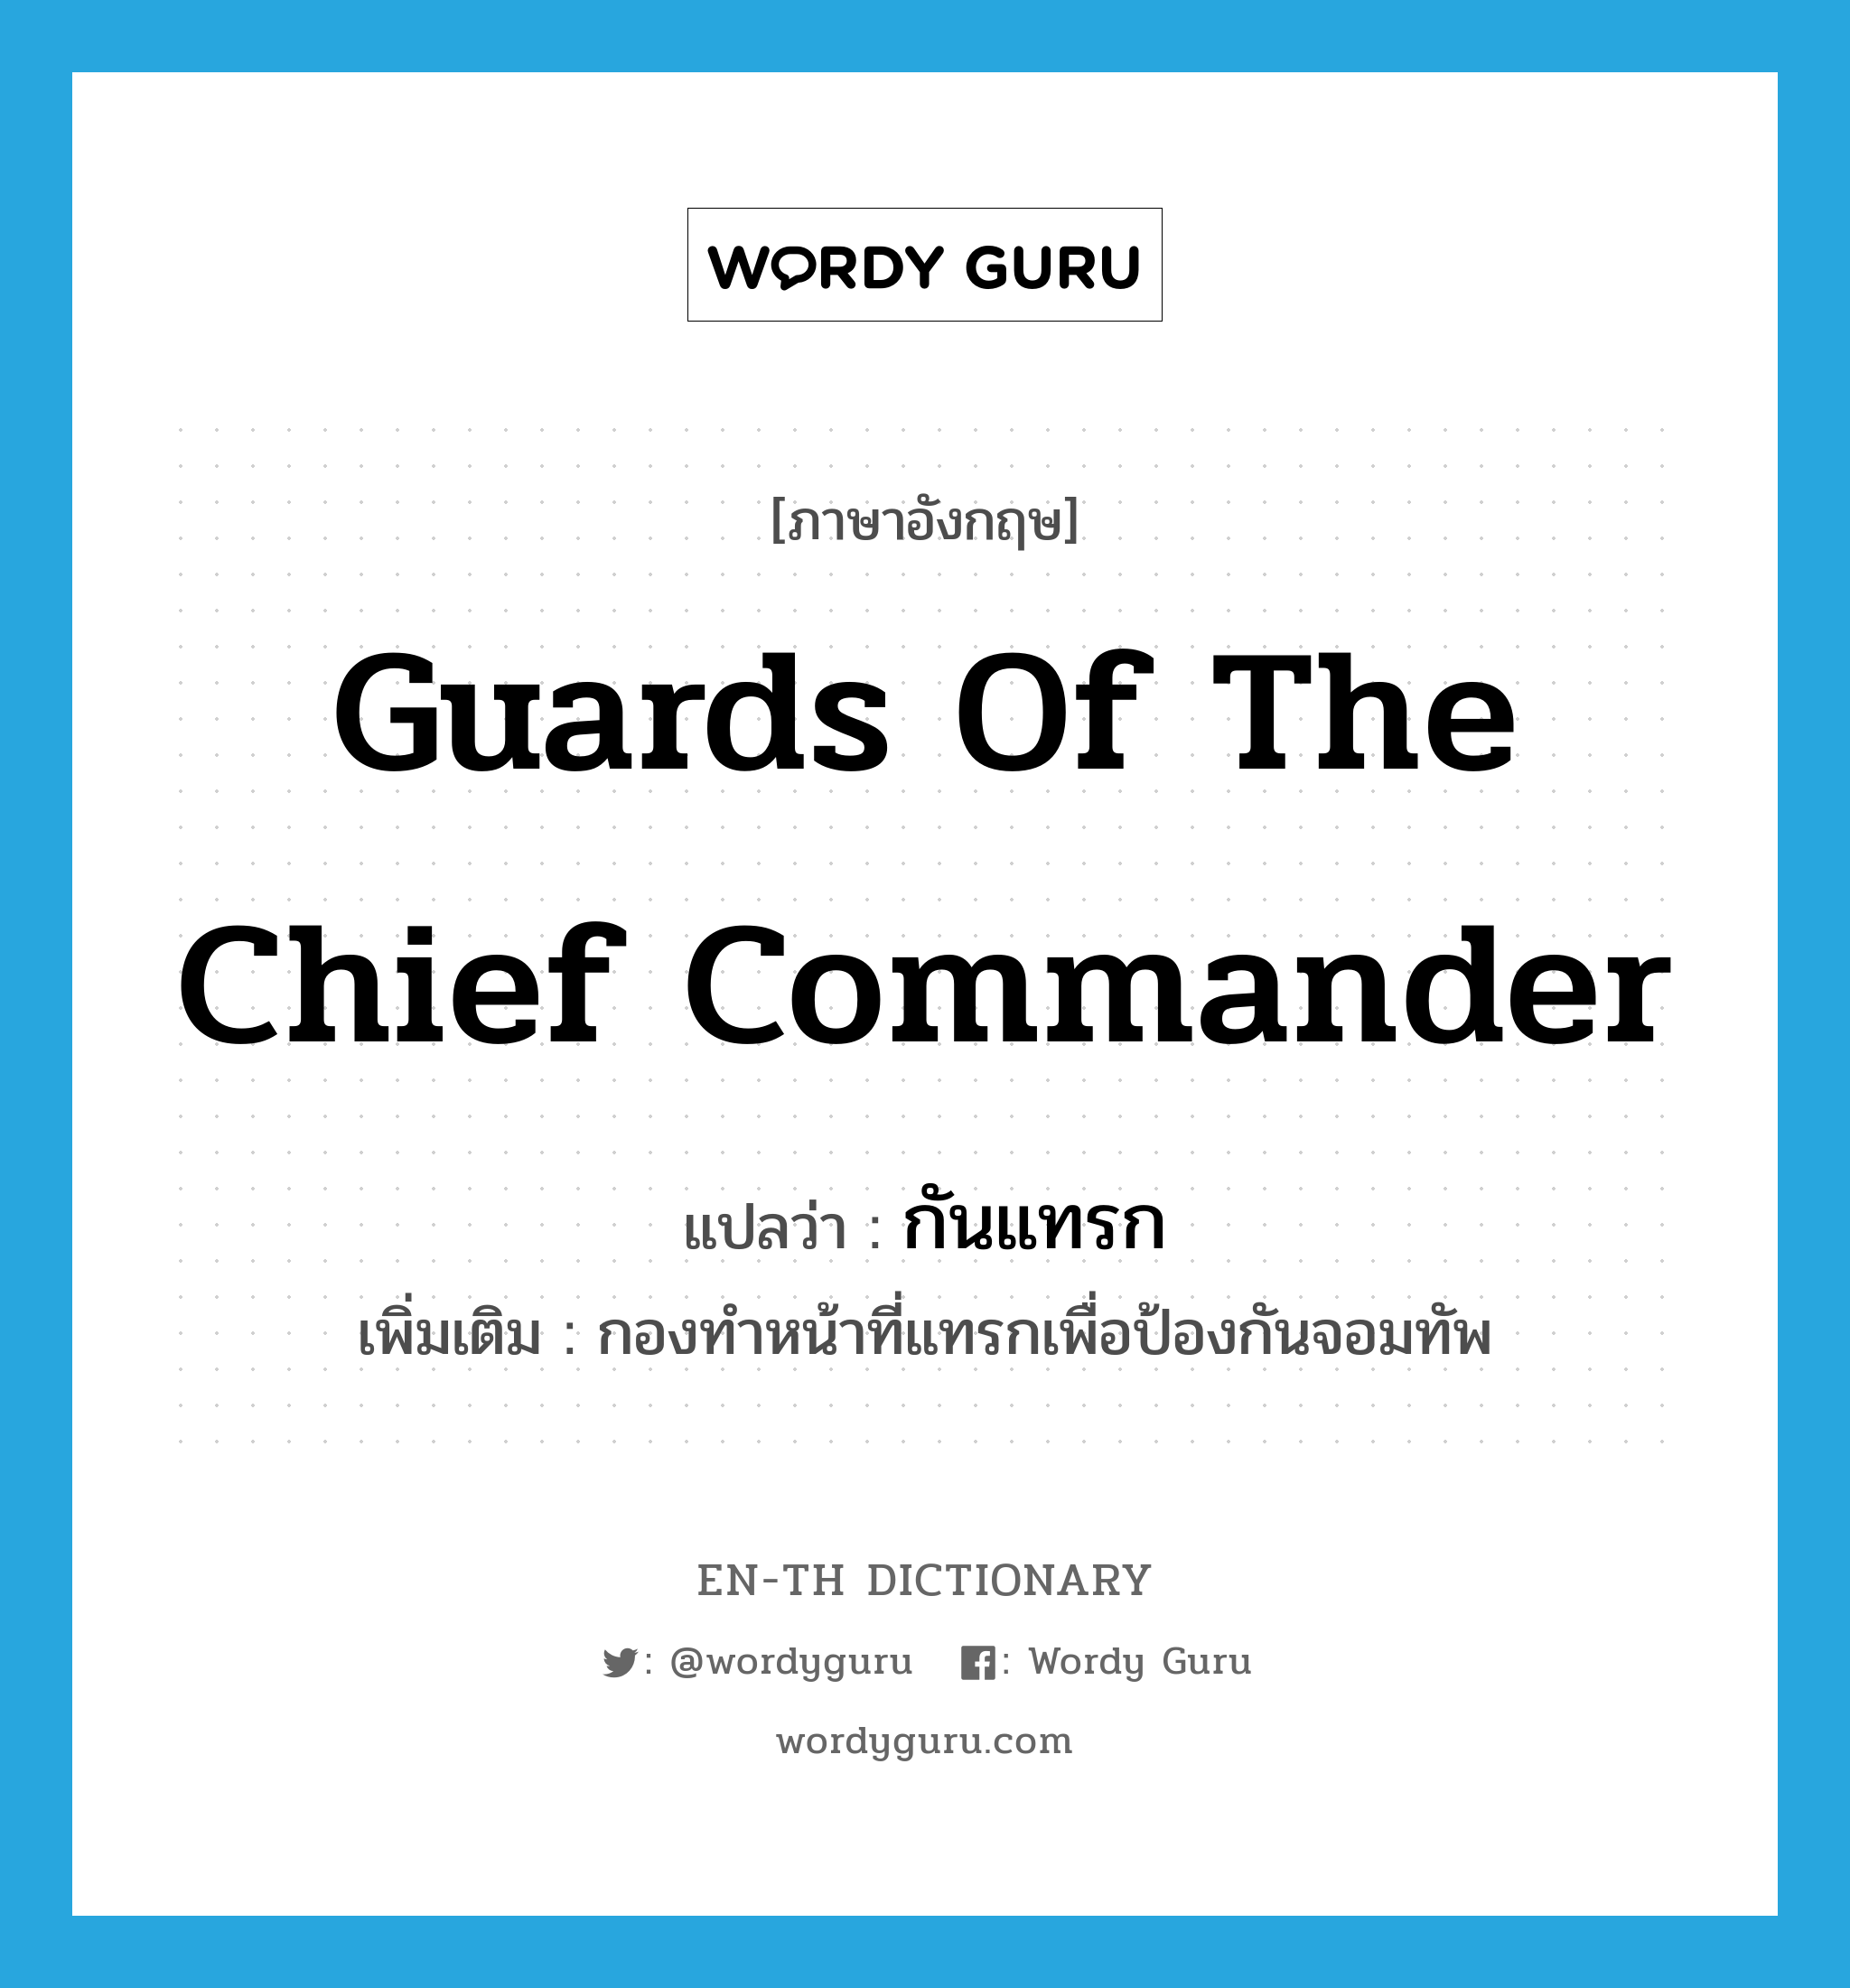 กันแทรก ภาษาอังกฤษ?, คำศัพท์ภาษาอังกฤษ กันแทรก แปลว่า guards of the chief commander ประเภท N เพิ่มเติม กองทำหน้าที่แทรกเพื่อป้องกันจอมทัพ หมวด N